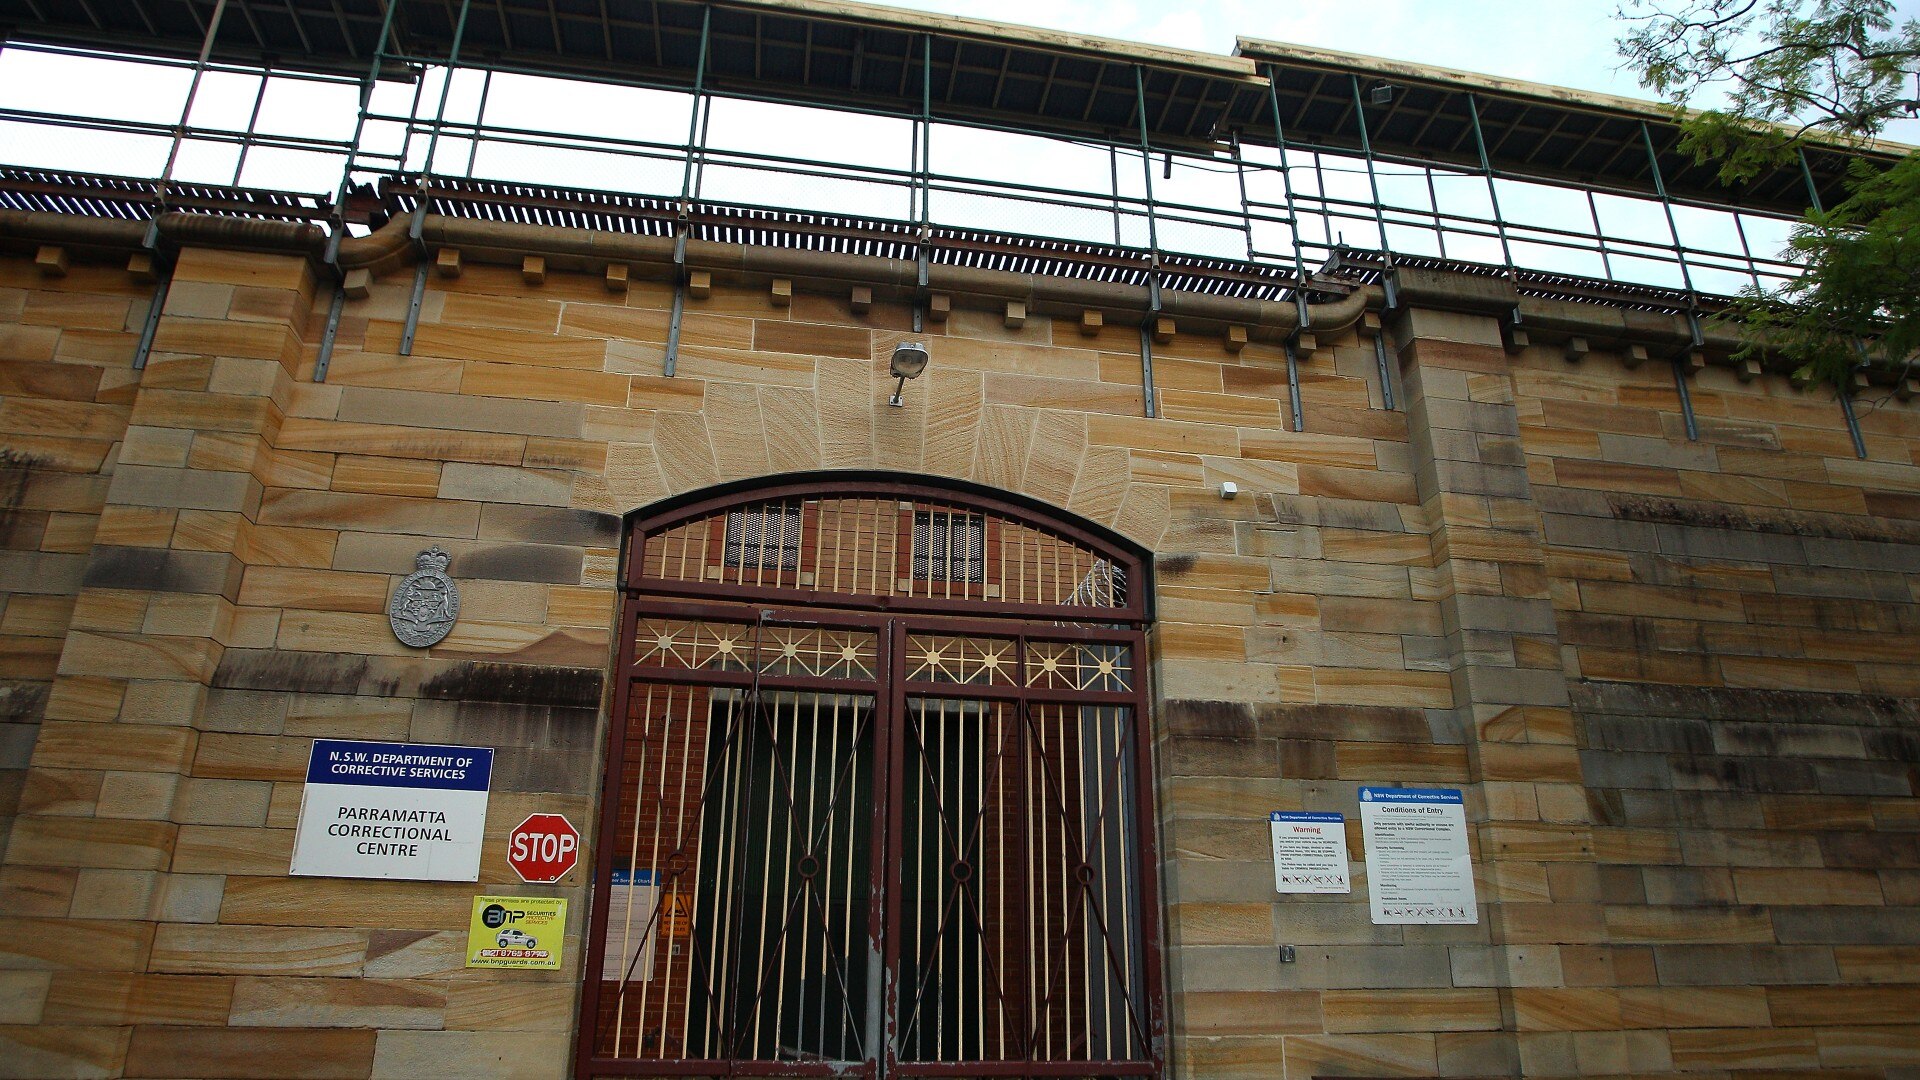 paramatta correctional centre